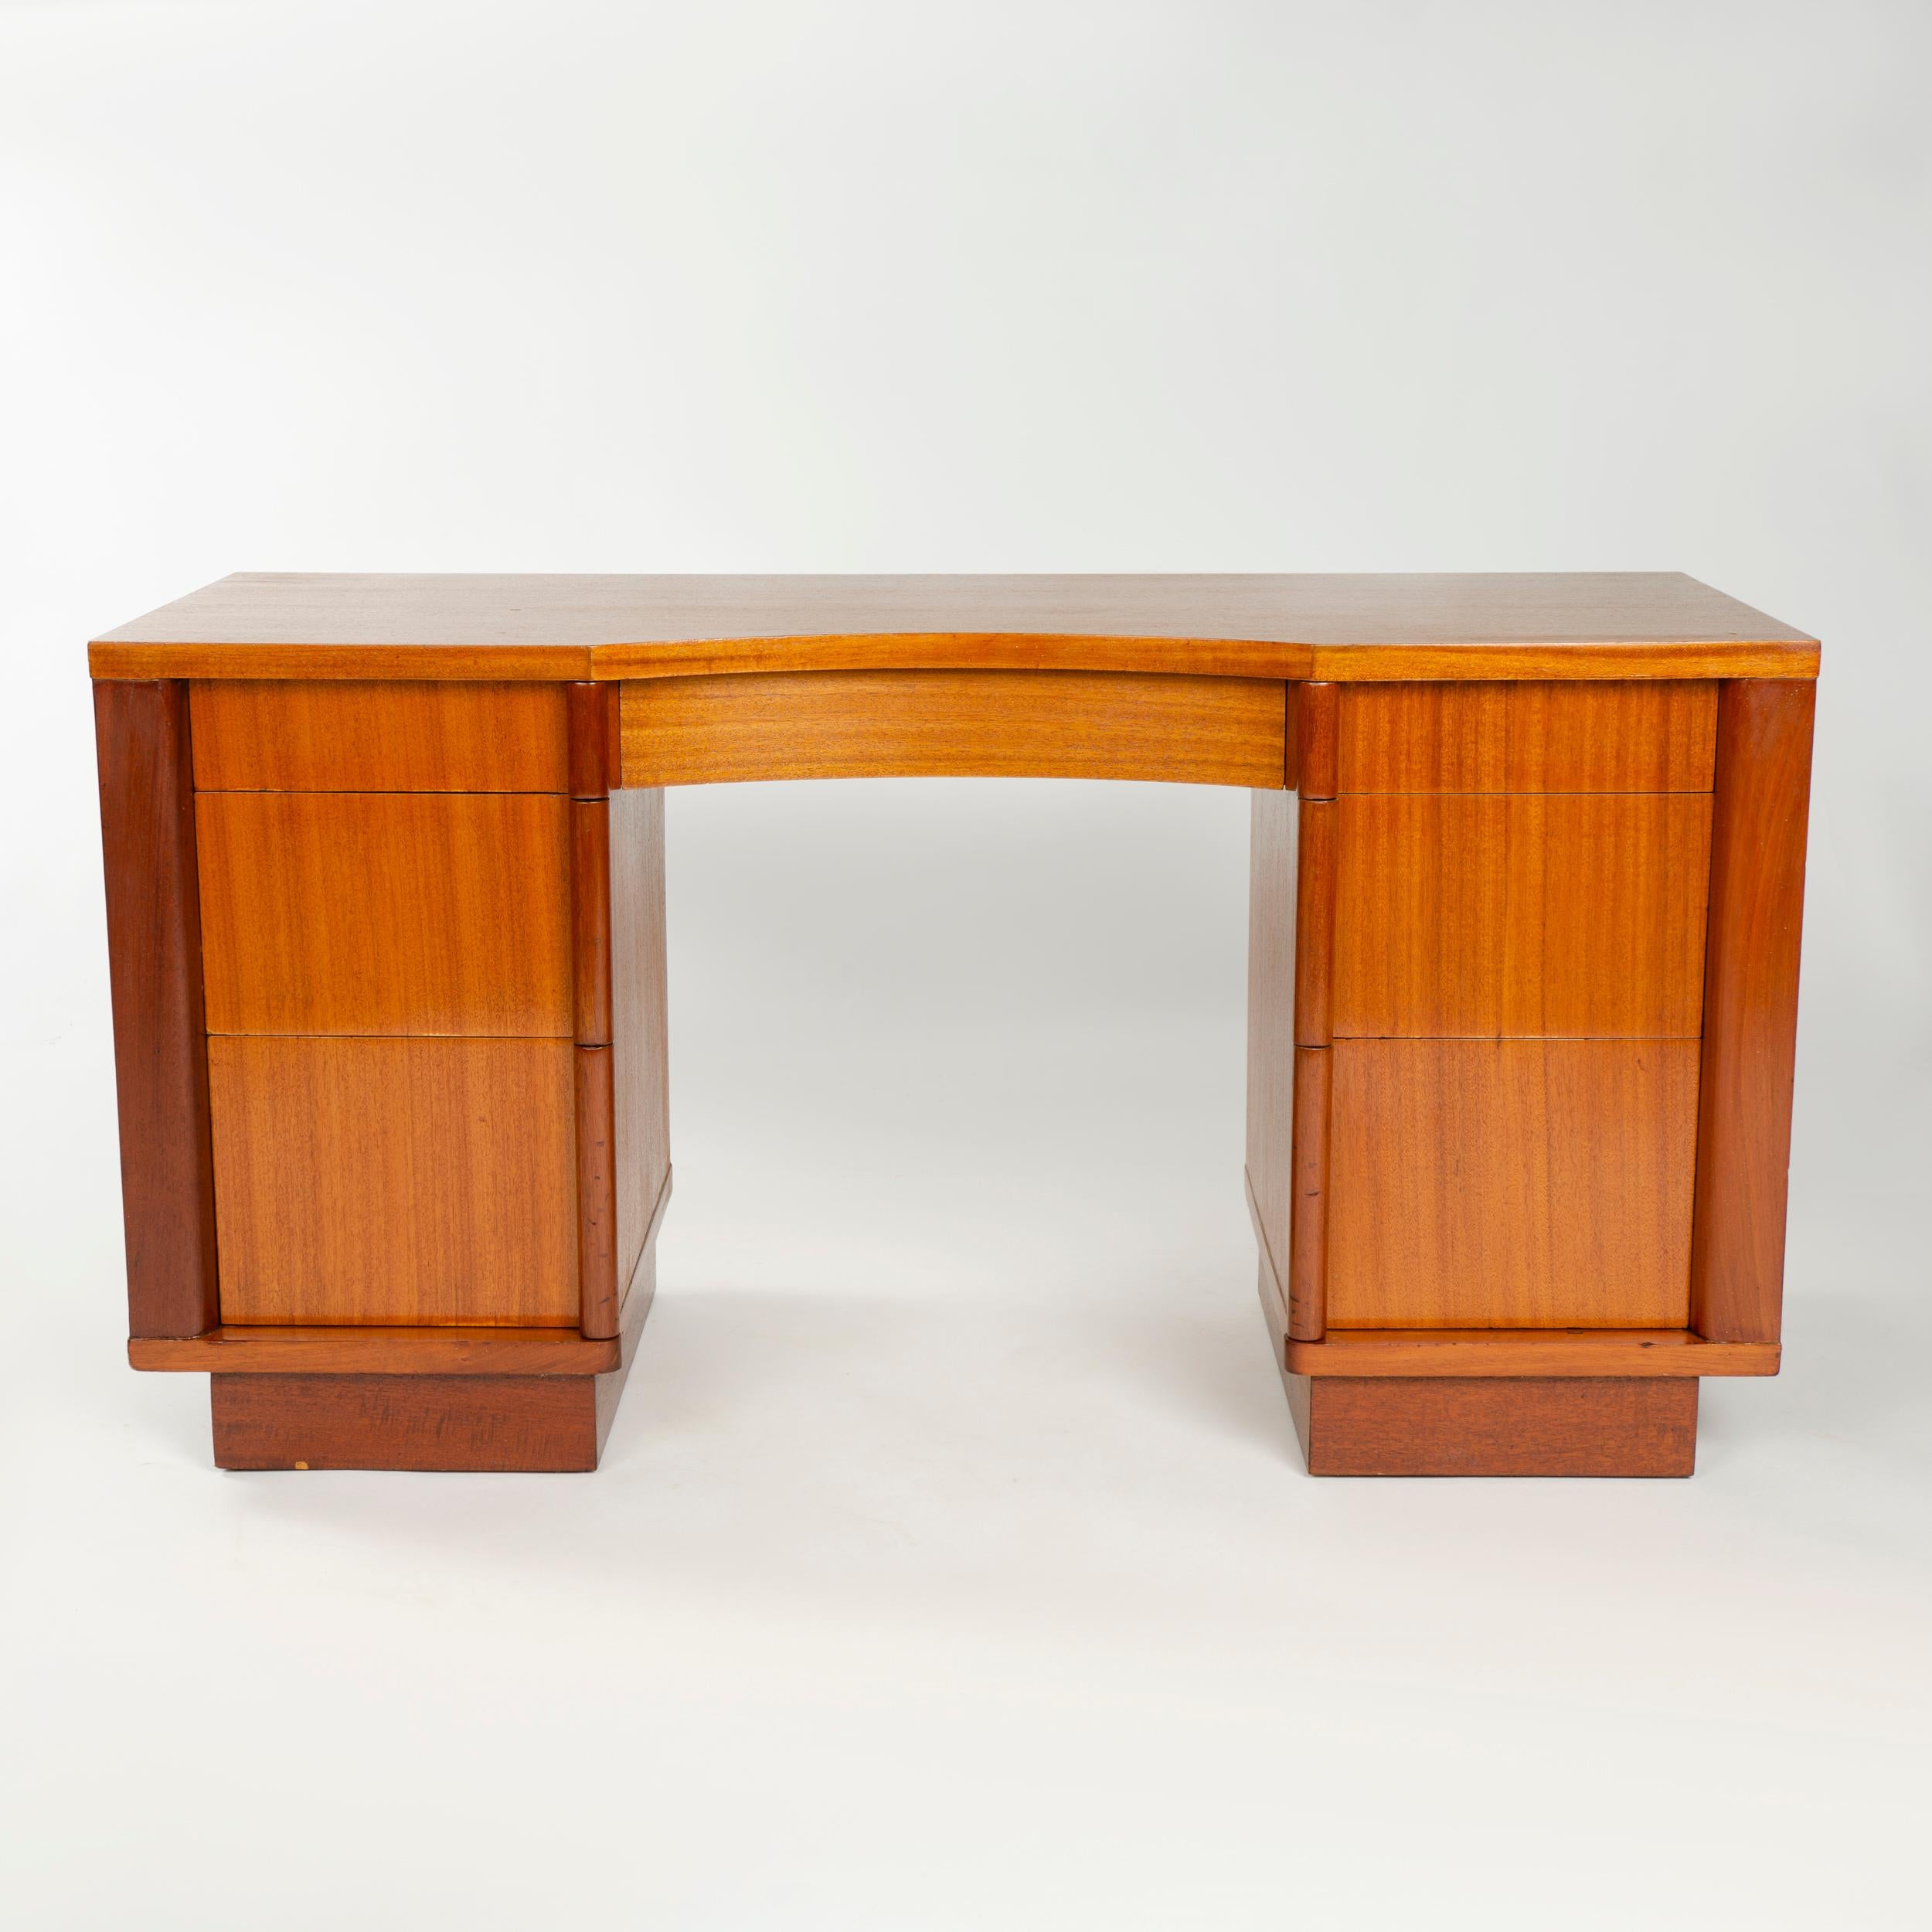 Doppelter Schreibtisch oder Waschtisch aus Massivholz mit gebogener Sitzfläche und vertikal gestapelten Schubladenauszügen.